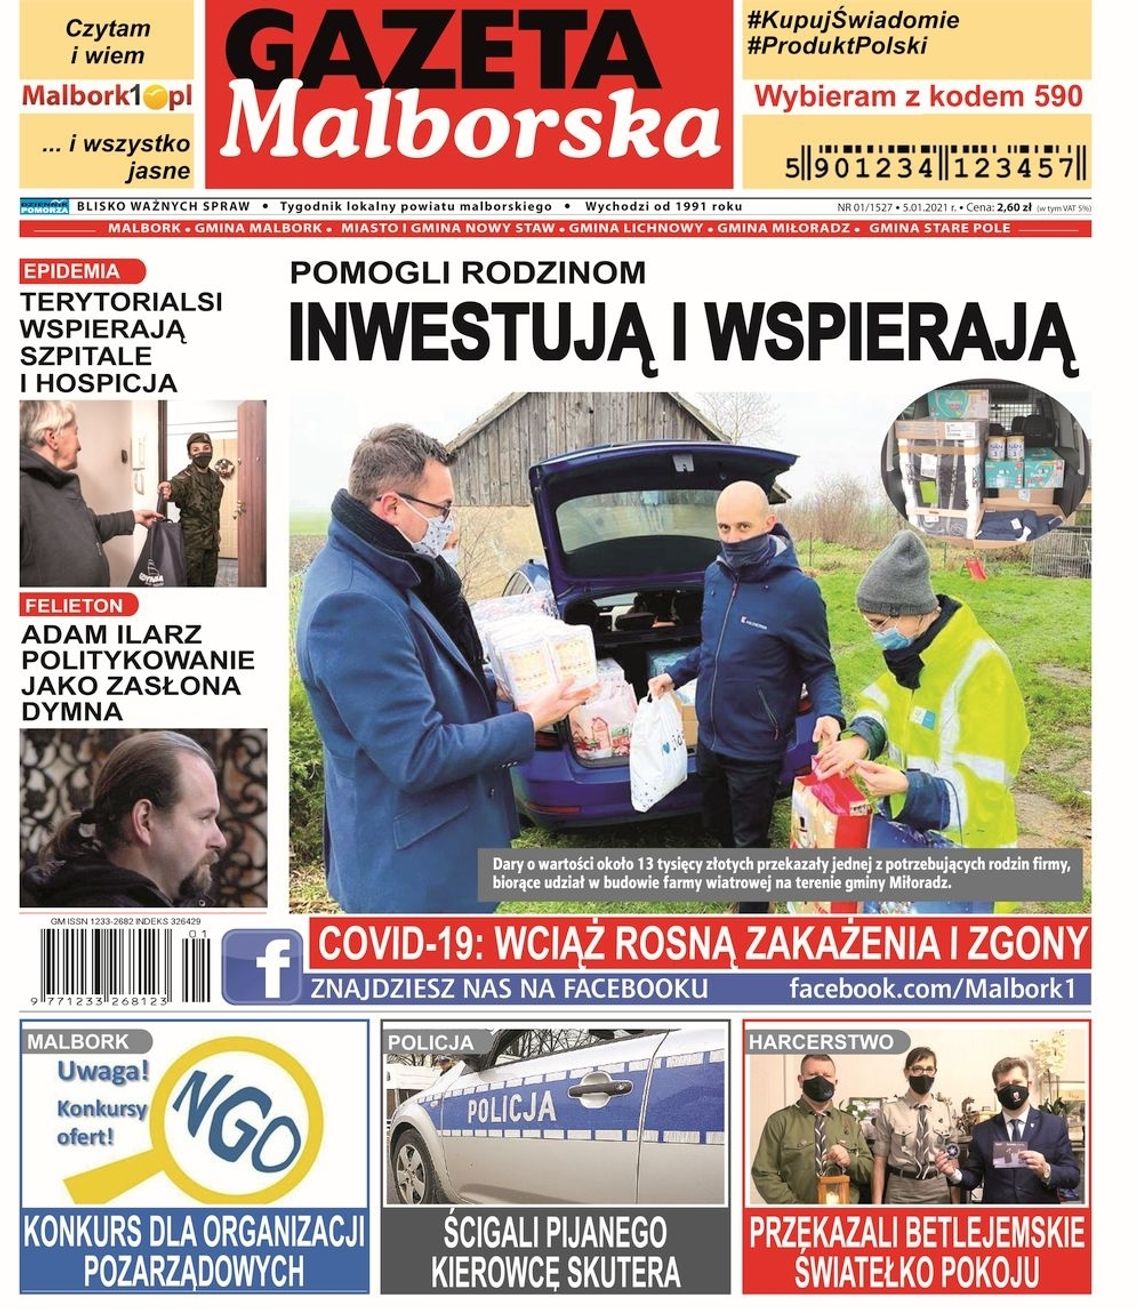 Noworoczy numer Gazety Malborskiej już w sprzedaży! Najnowsze wiadomości z Malborka i gmin naszego powiatu w Twoim kiosku. Co w środku?